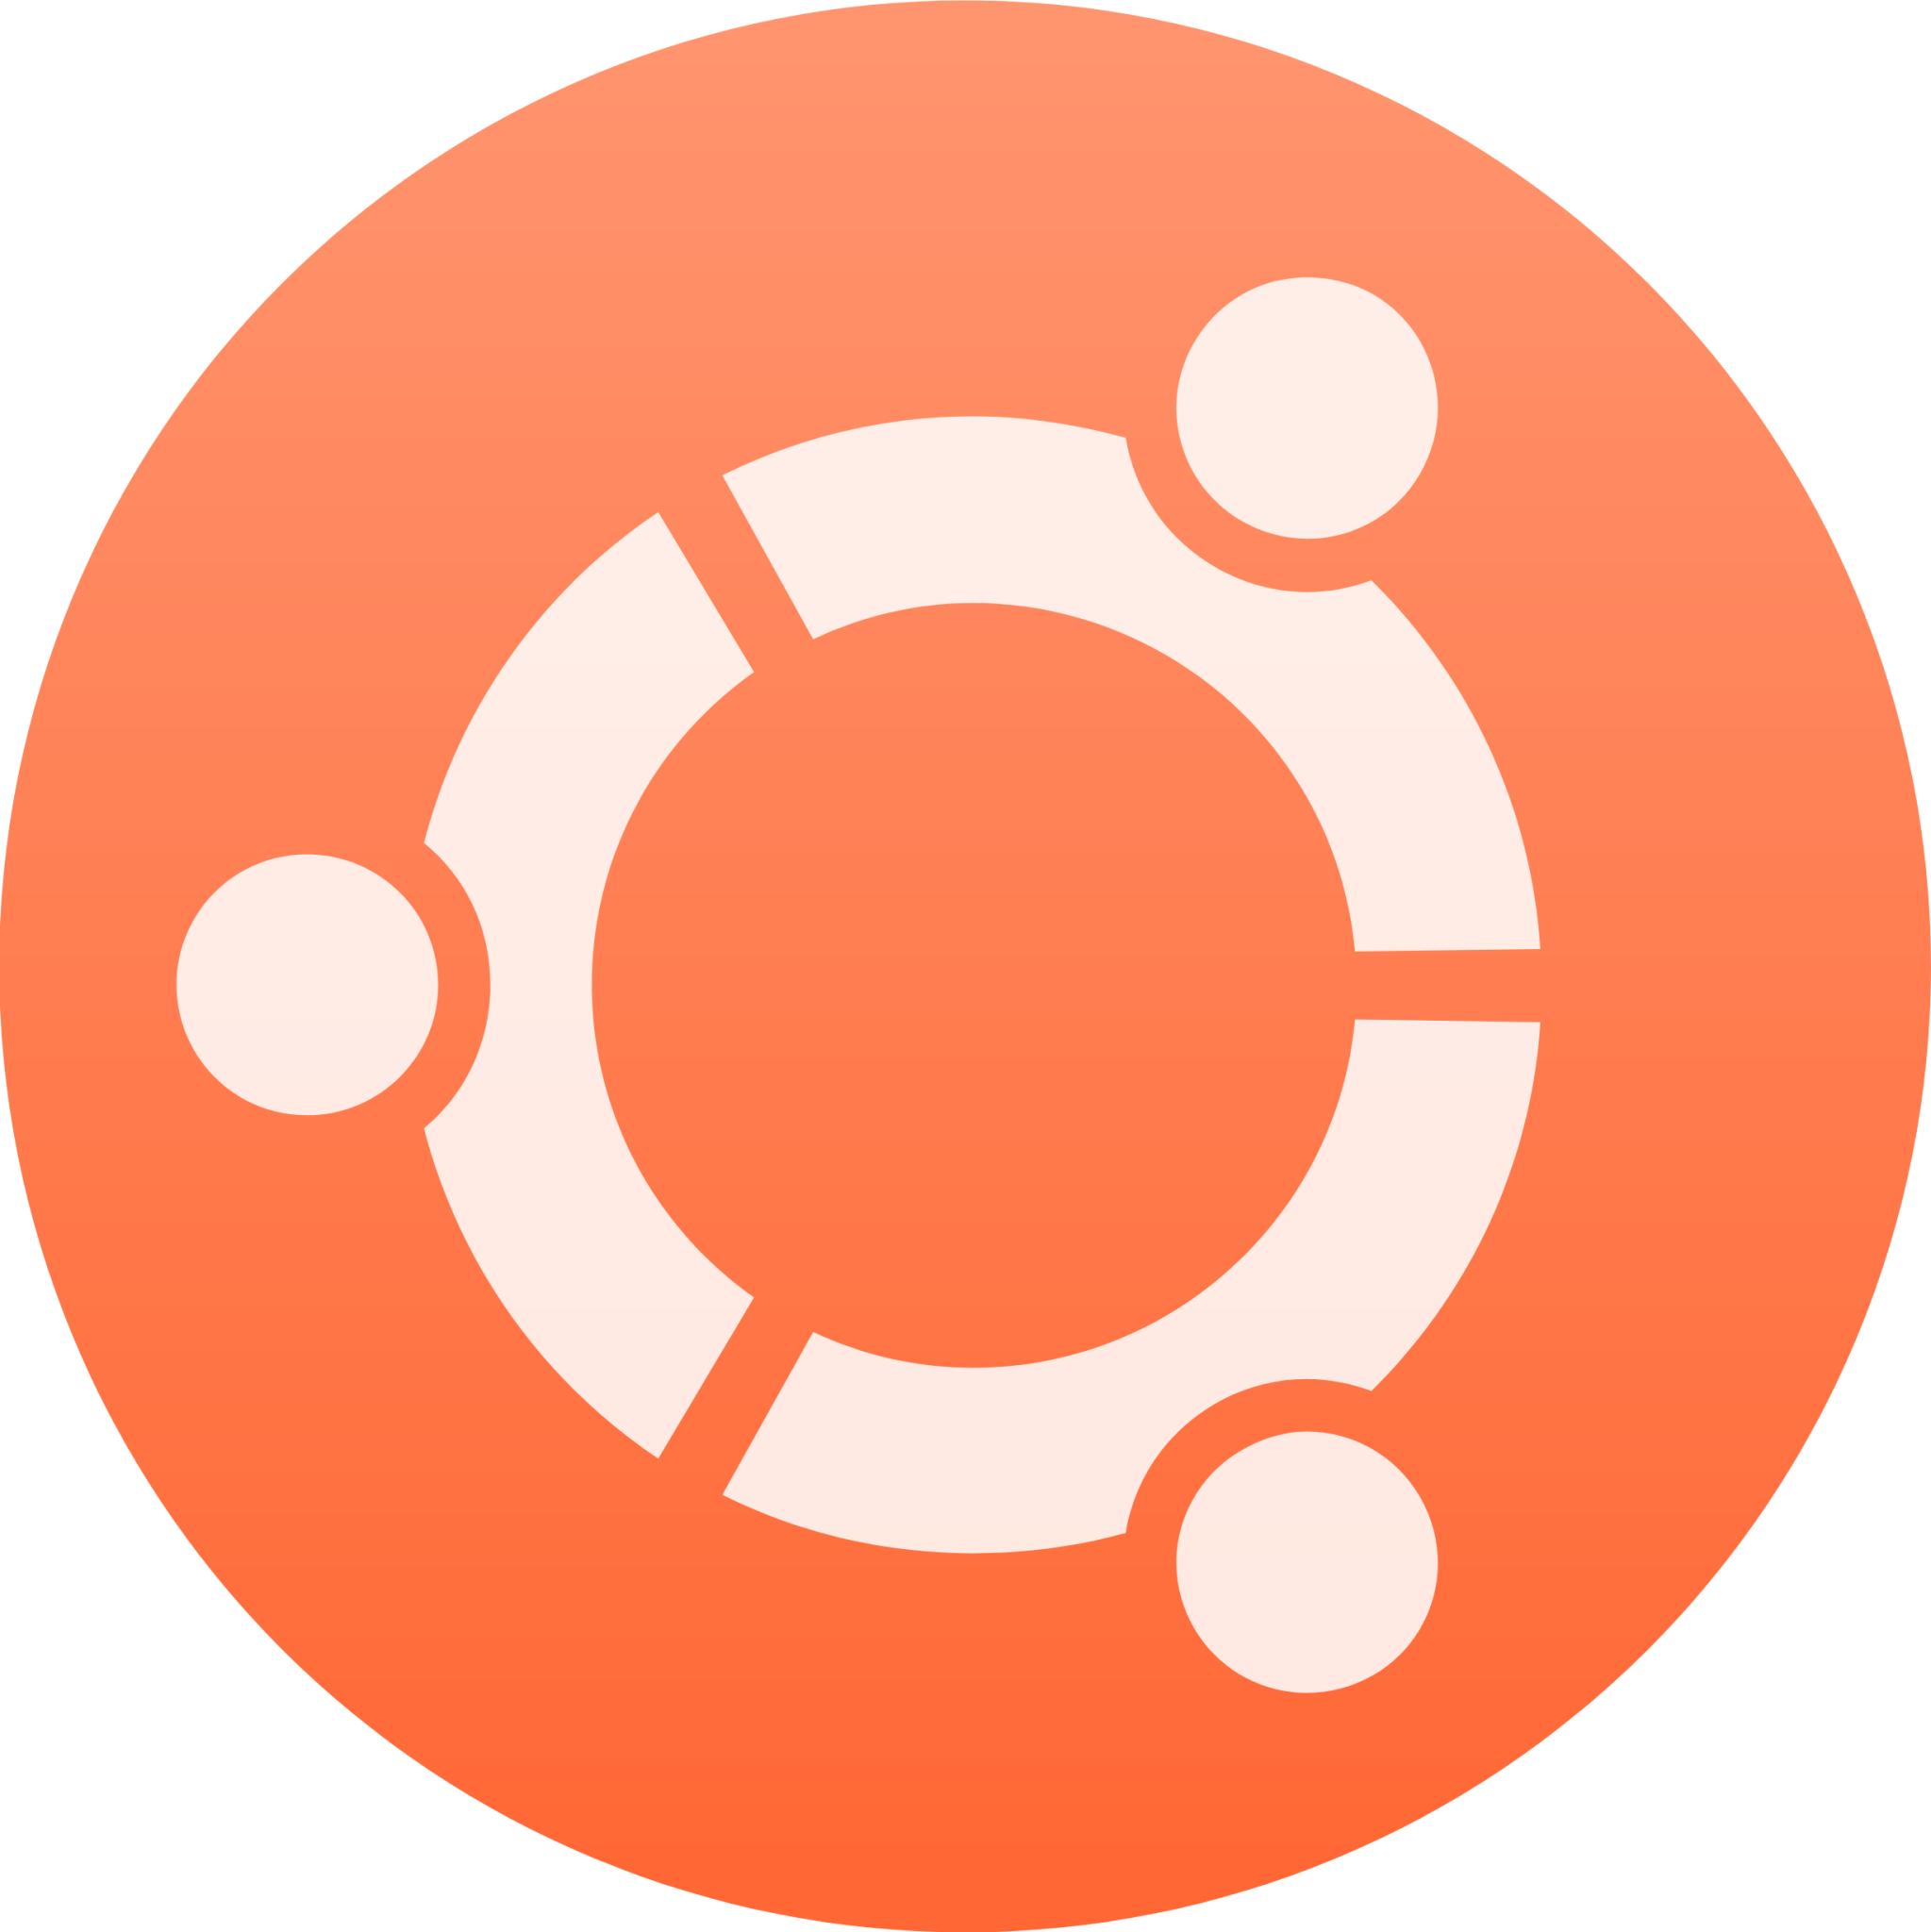 launcher bfb ubuntu icon